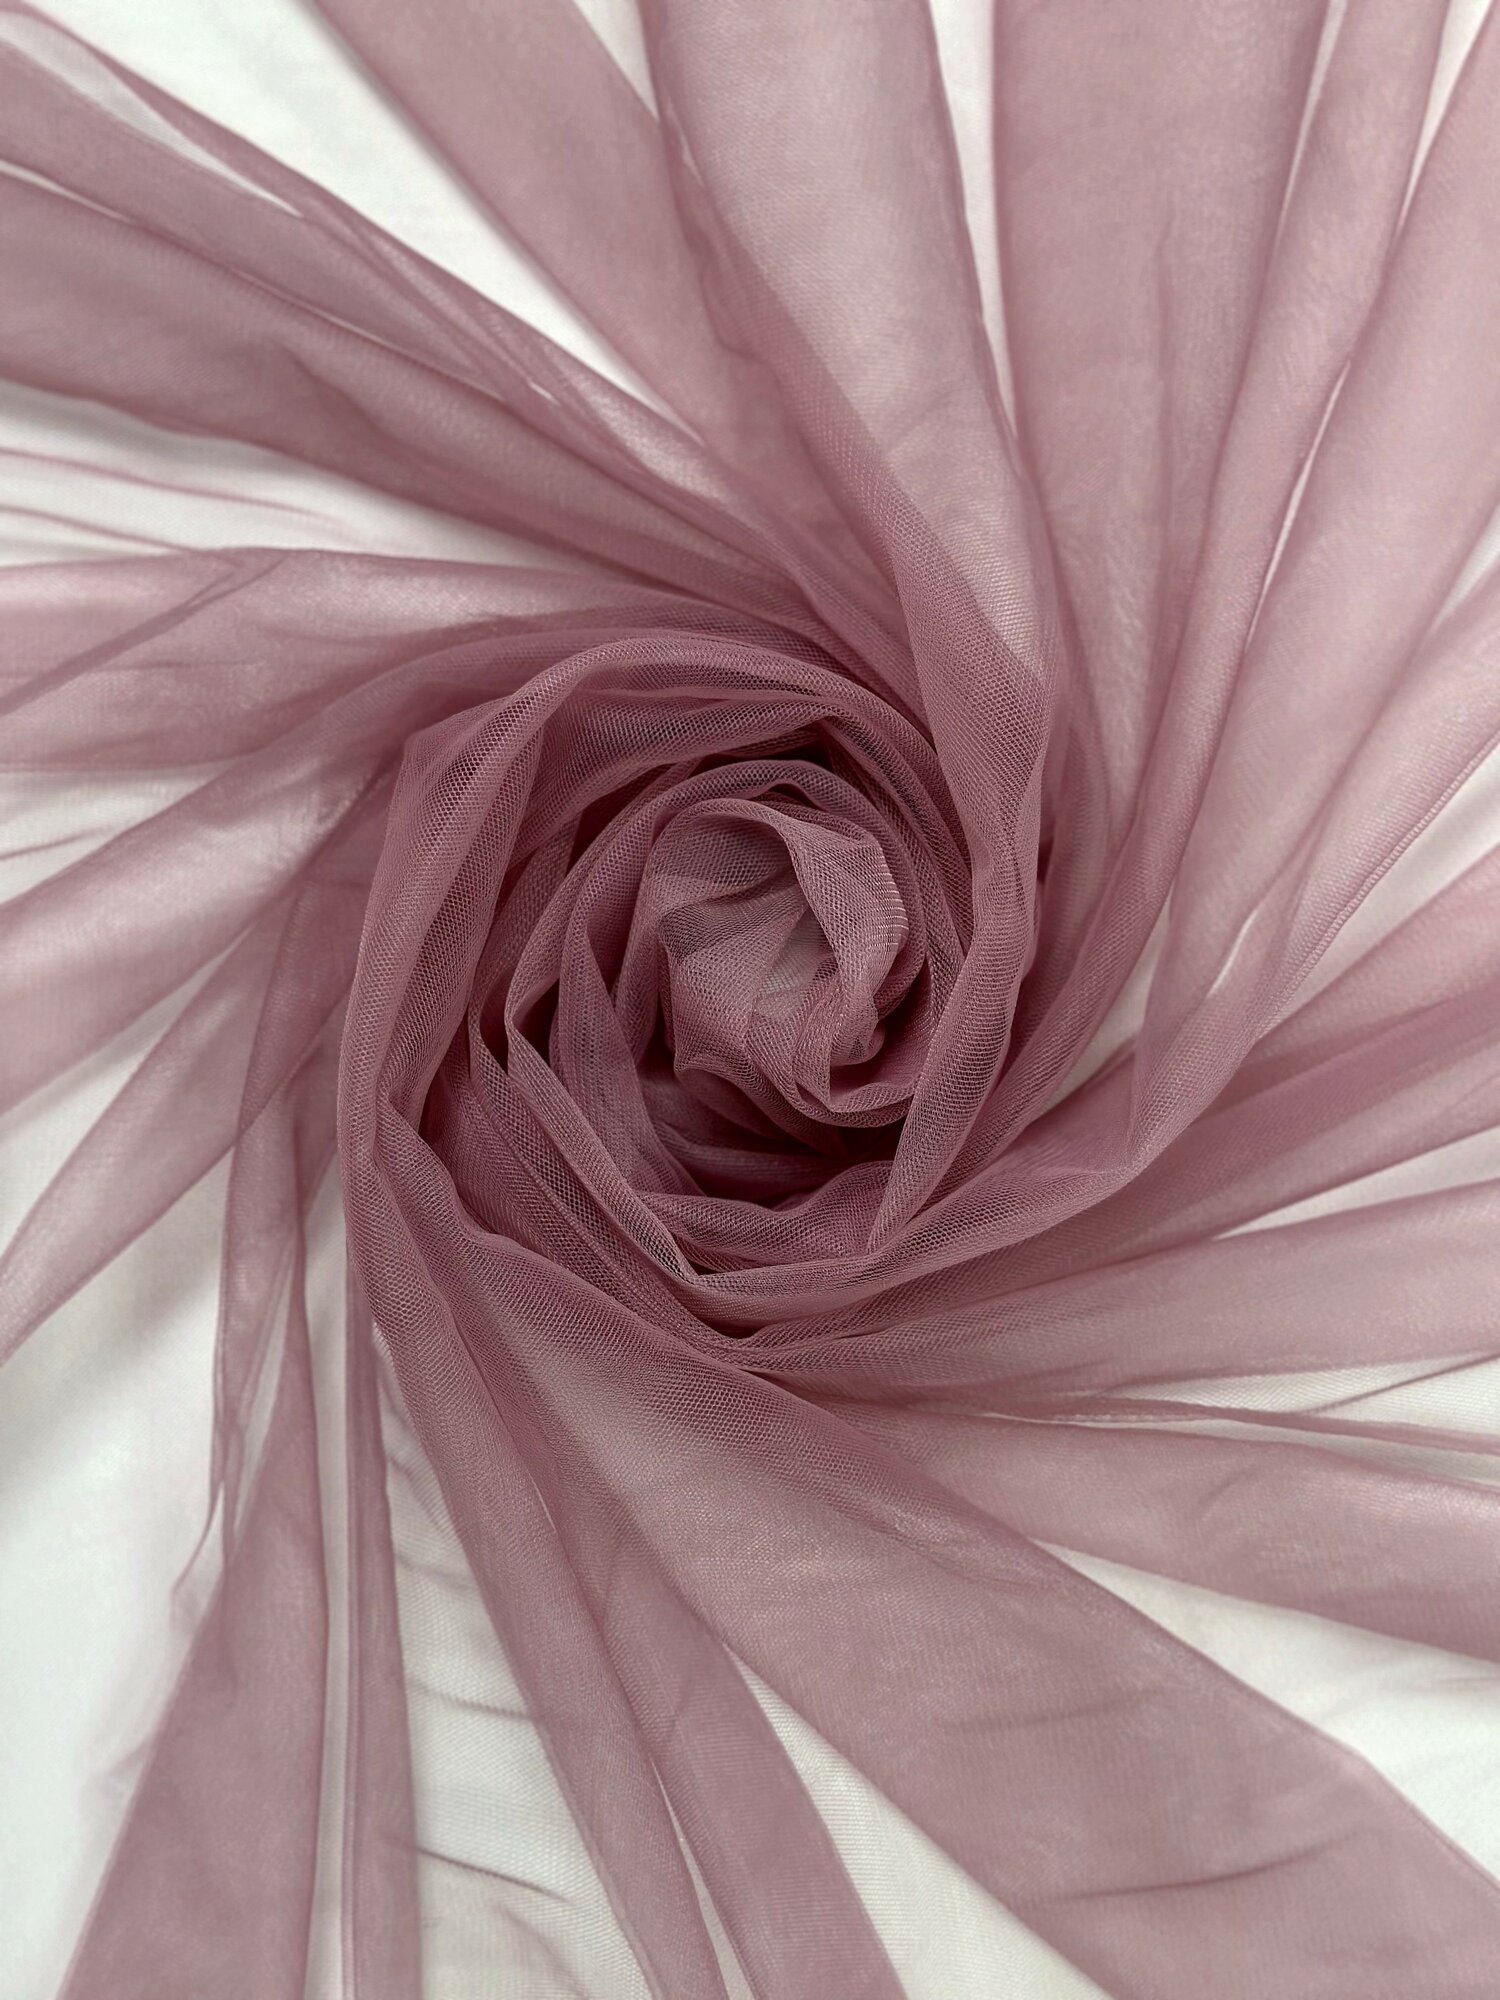 Ткань Фатин Еврофатин Дымчатая роза 1м x 3м